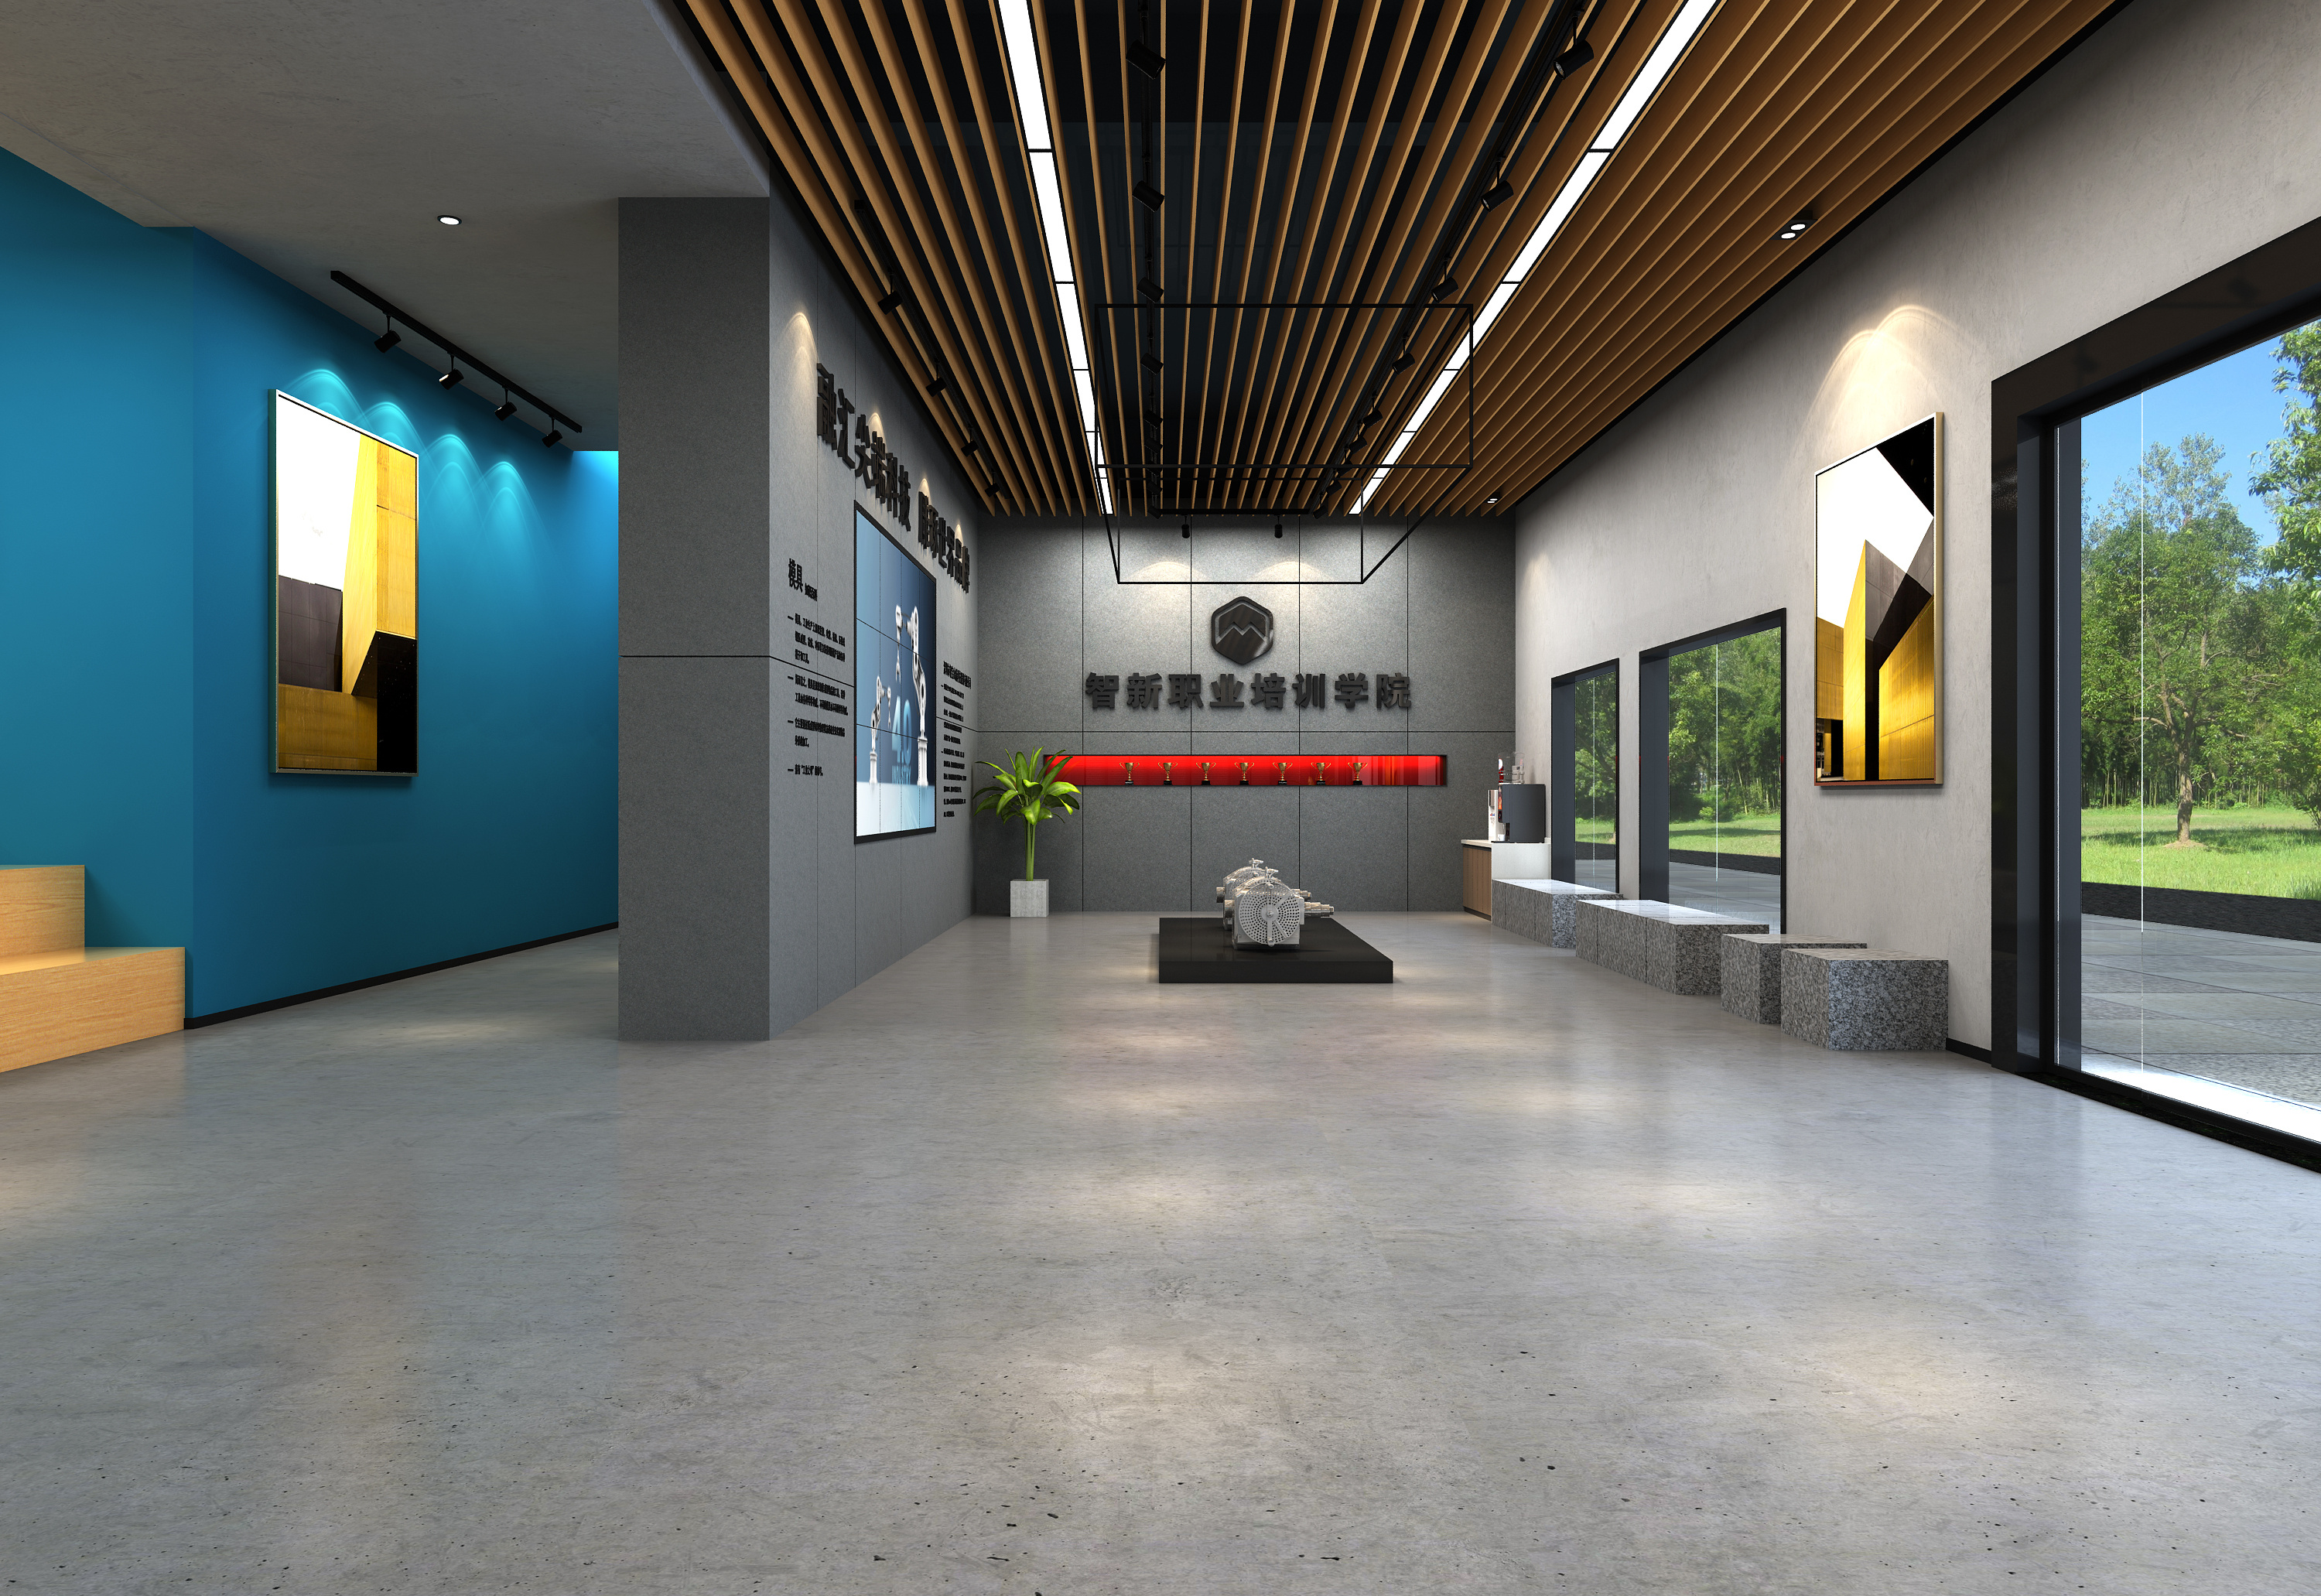 现代大厅效果图 - 效果图交流区-建E室内设计网